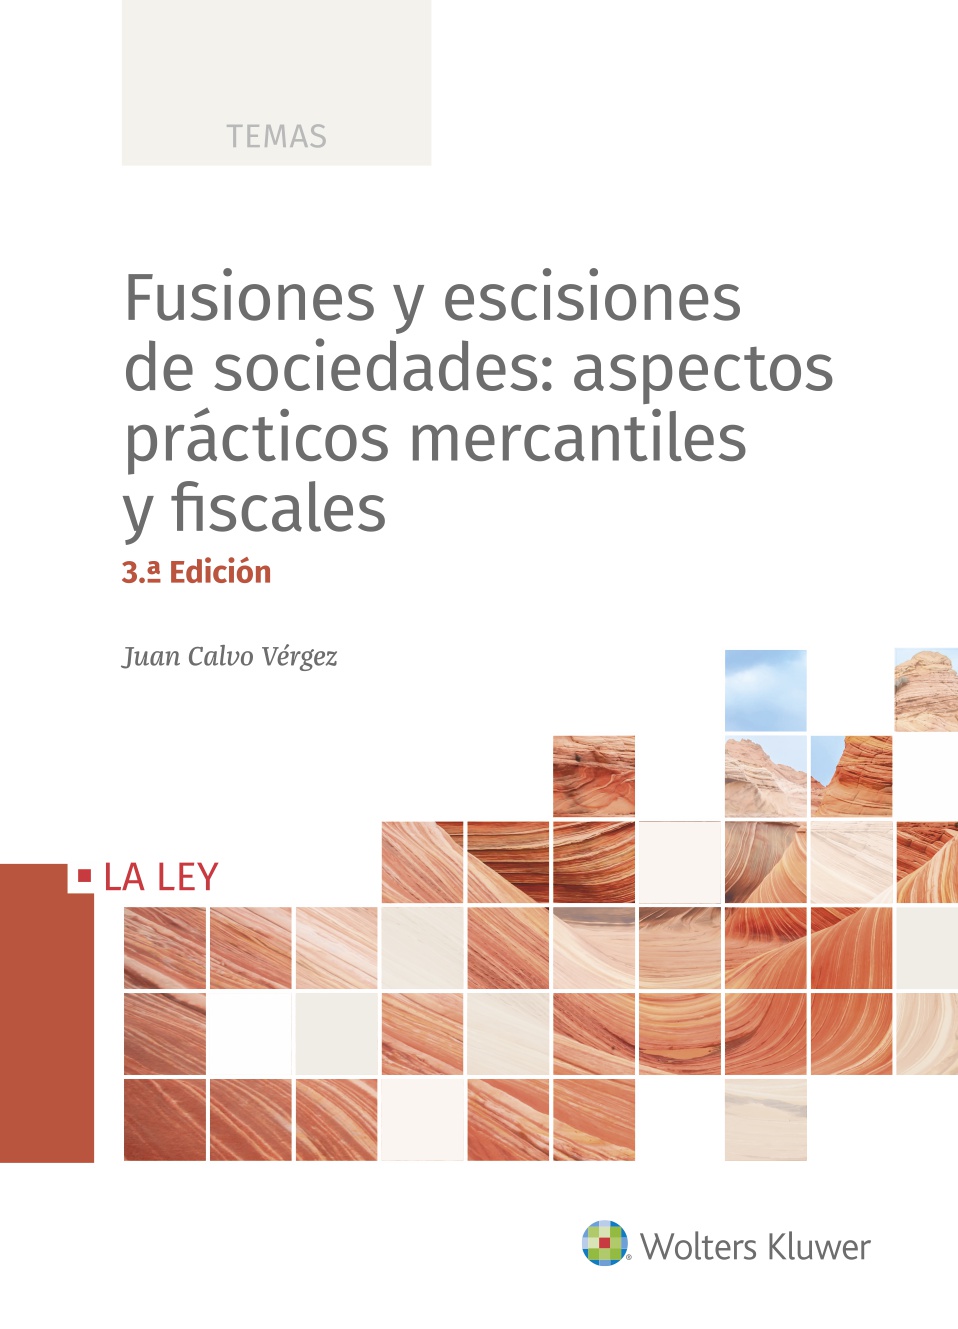 Fusiones y escisiones de sociedades: aspectos prácticos mercantiles y fiscales (3.ª Edición) (9788490209806)